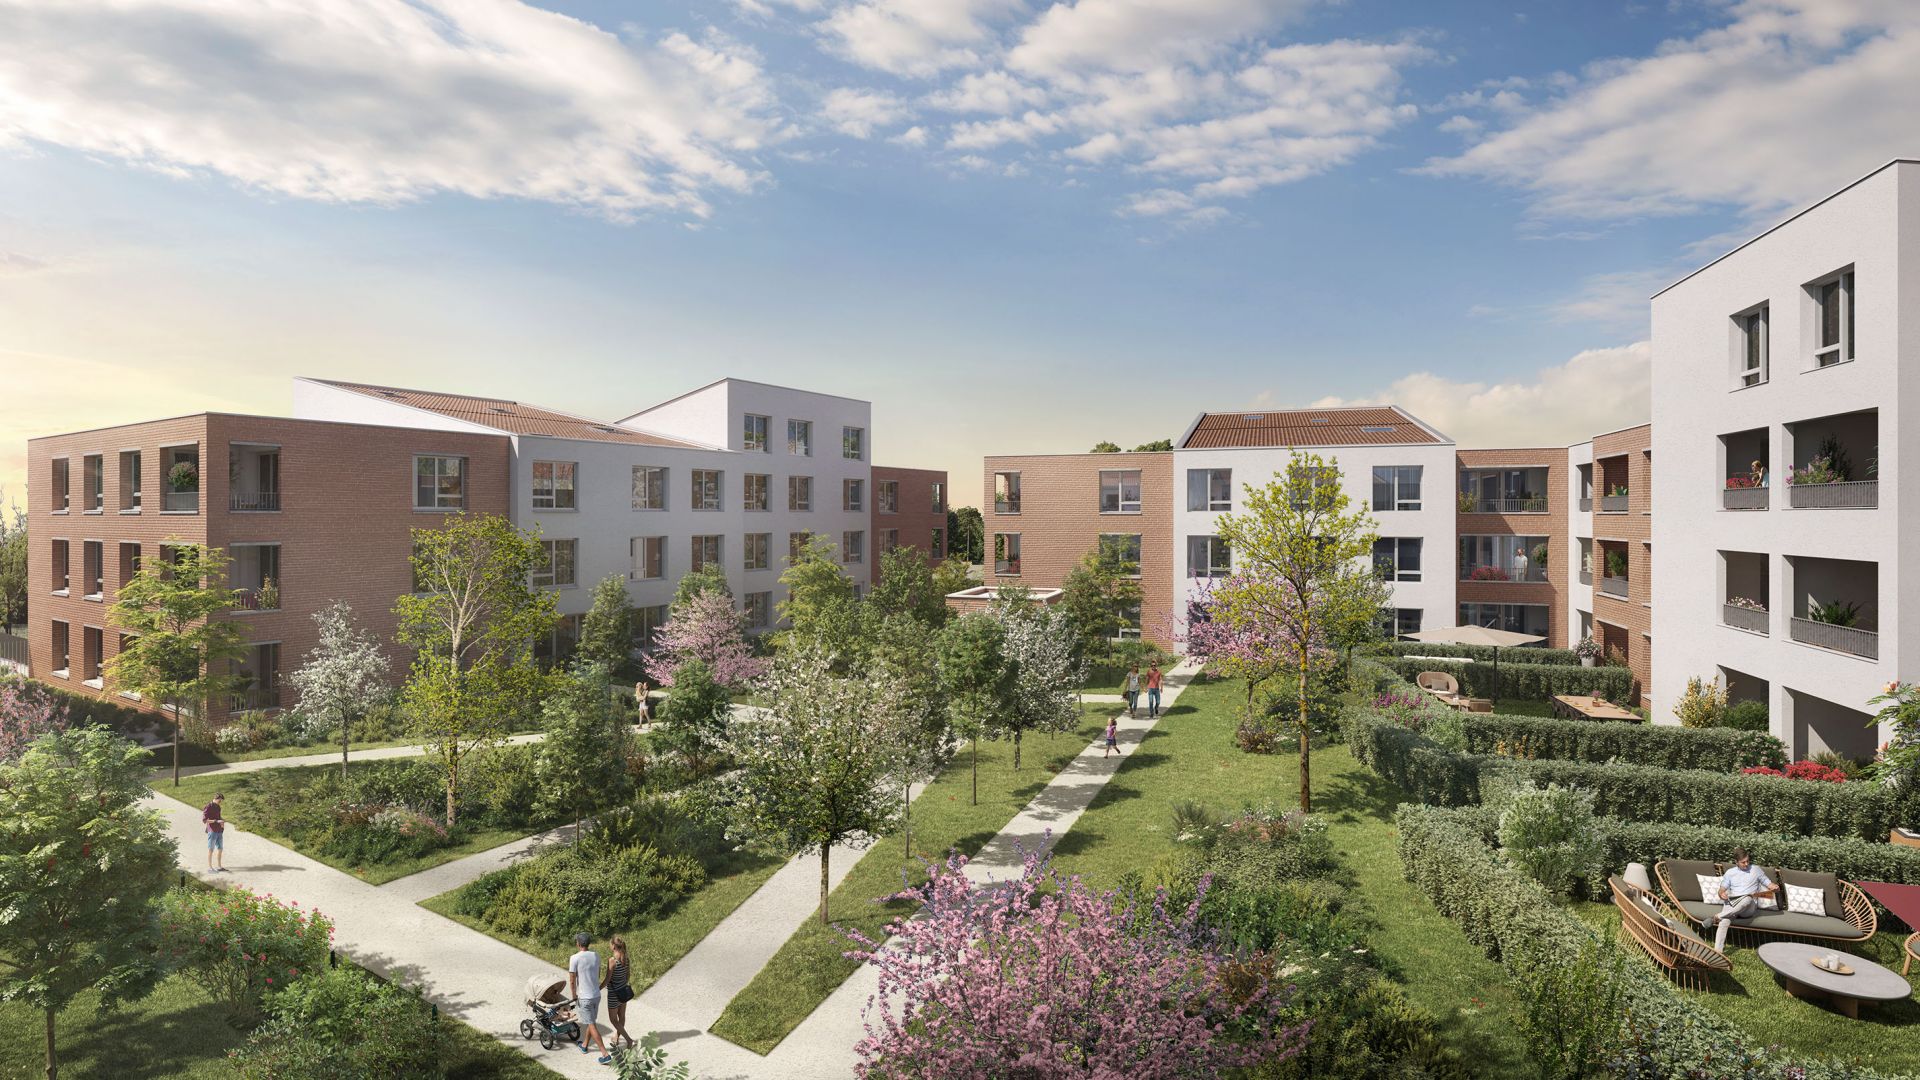 Greencity immobilier - achat appartements neufs du T1 au T4Duplex - Résidence  LE BELLINI - LE GARIBALDI - 31200 Toulouse  